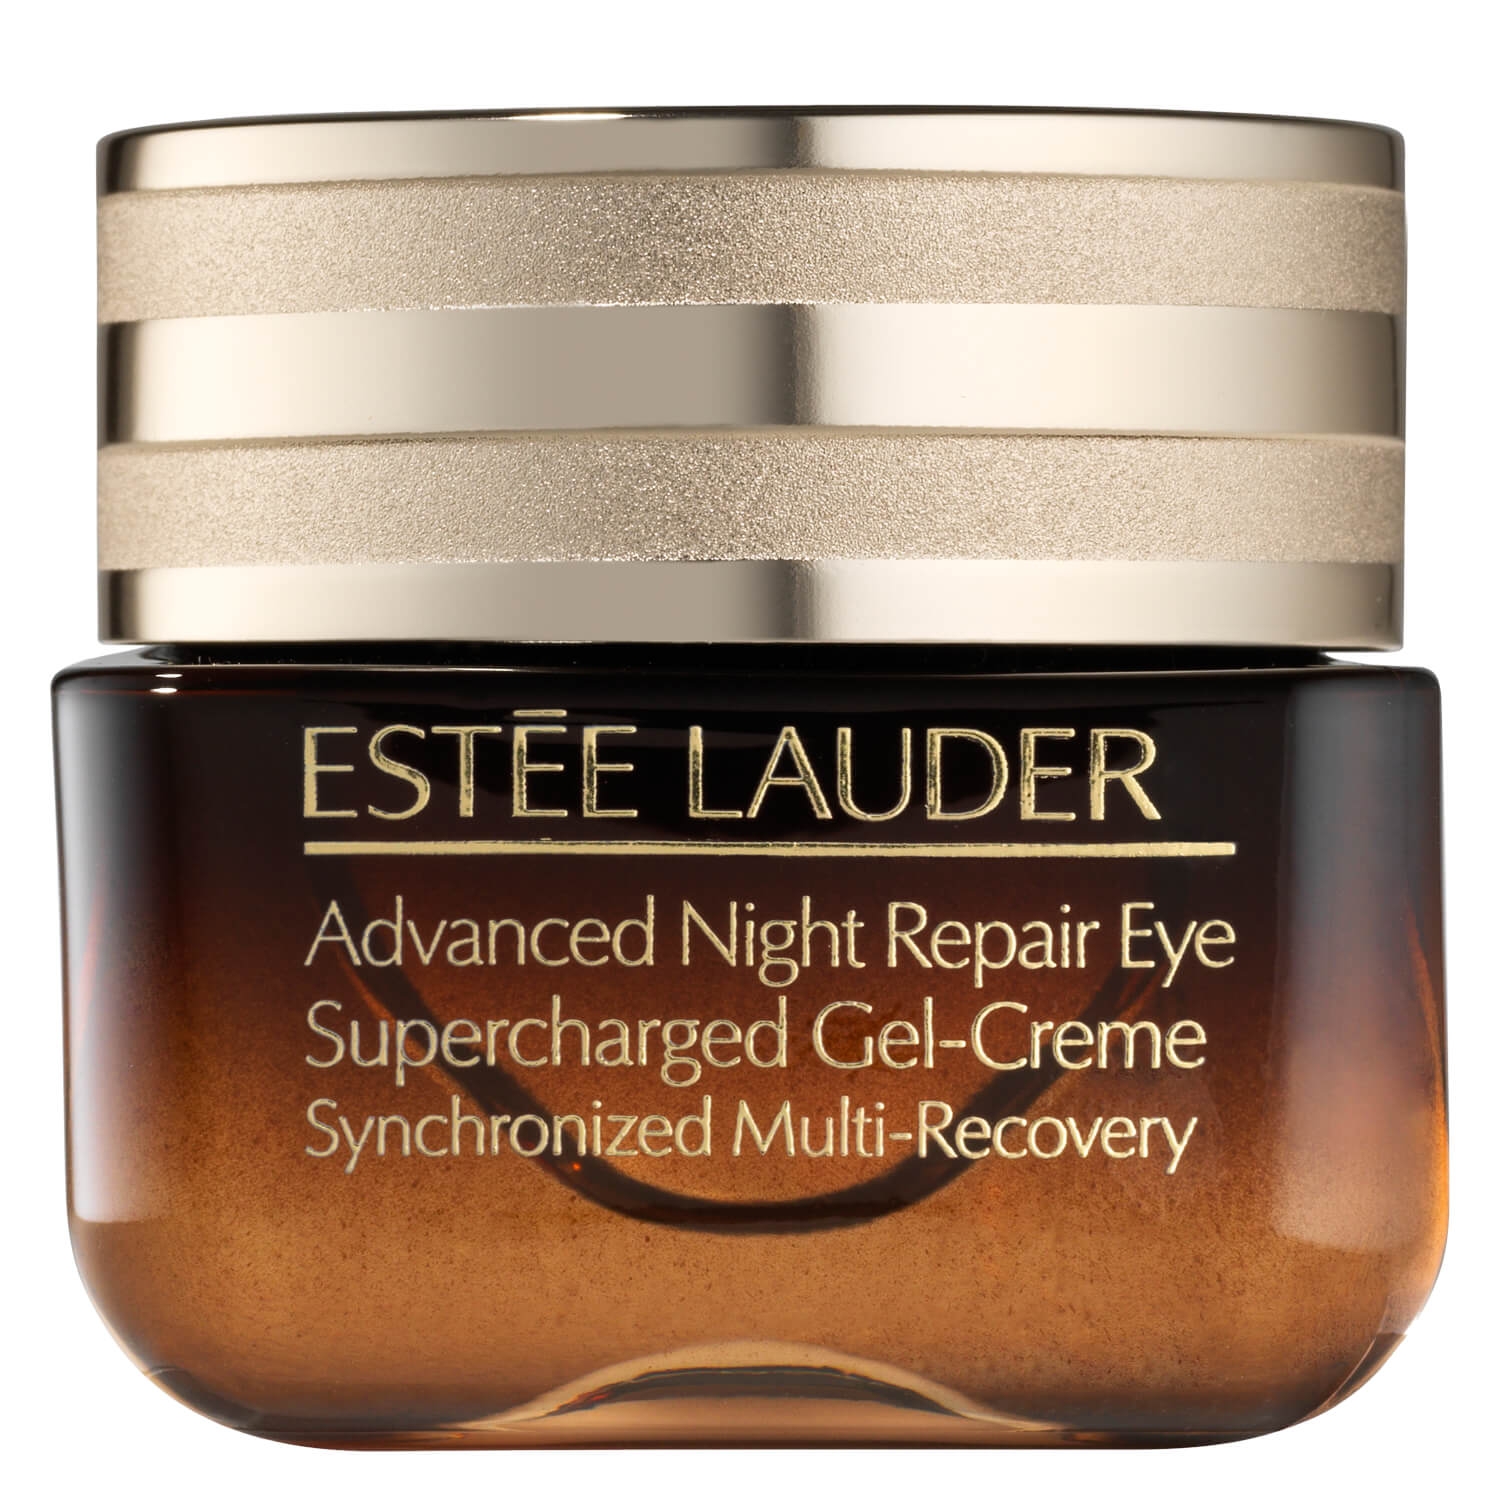 Produktbild von Advanced Night Repair Eye Supercharged Gel-Creme